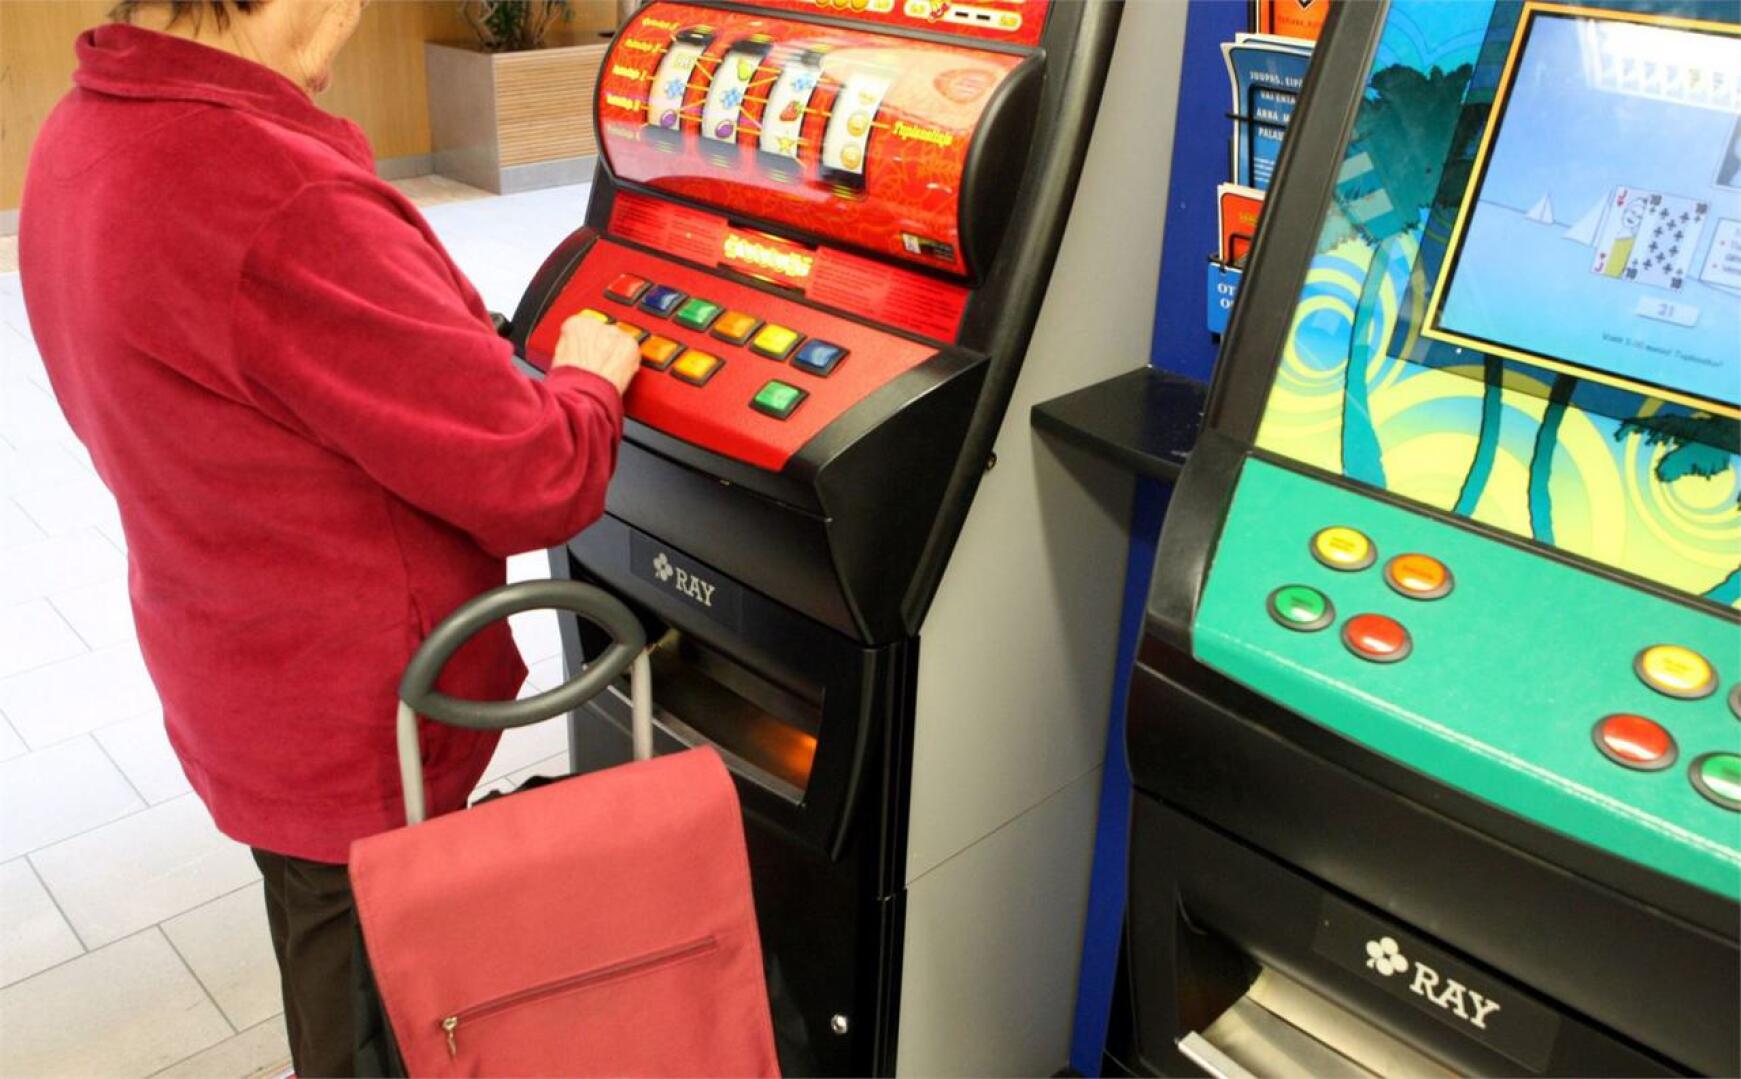 Ikäihmisten peliriippuvuus kohdistuu useimmiten rahapeliautomaatteihin, joihin jäävät koukkuun erityisesti iäkkäämmät naiset. LEHTIKUVA / JUSSI NUKARI